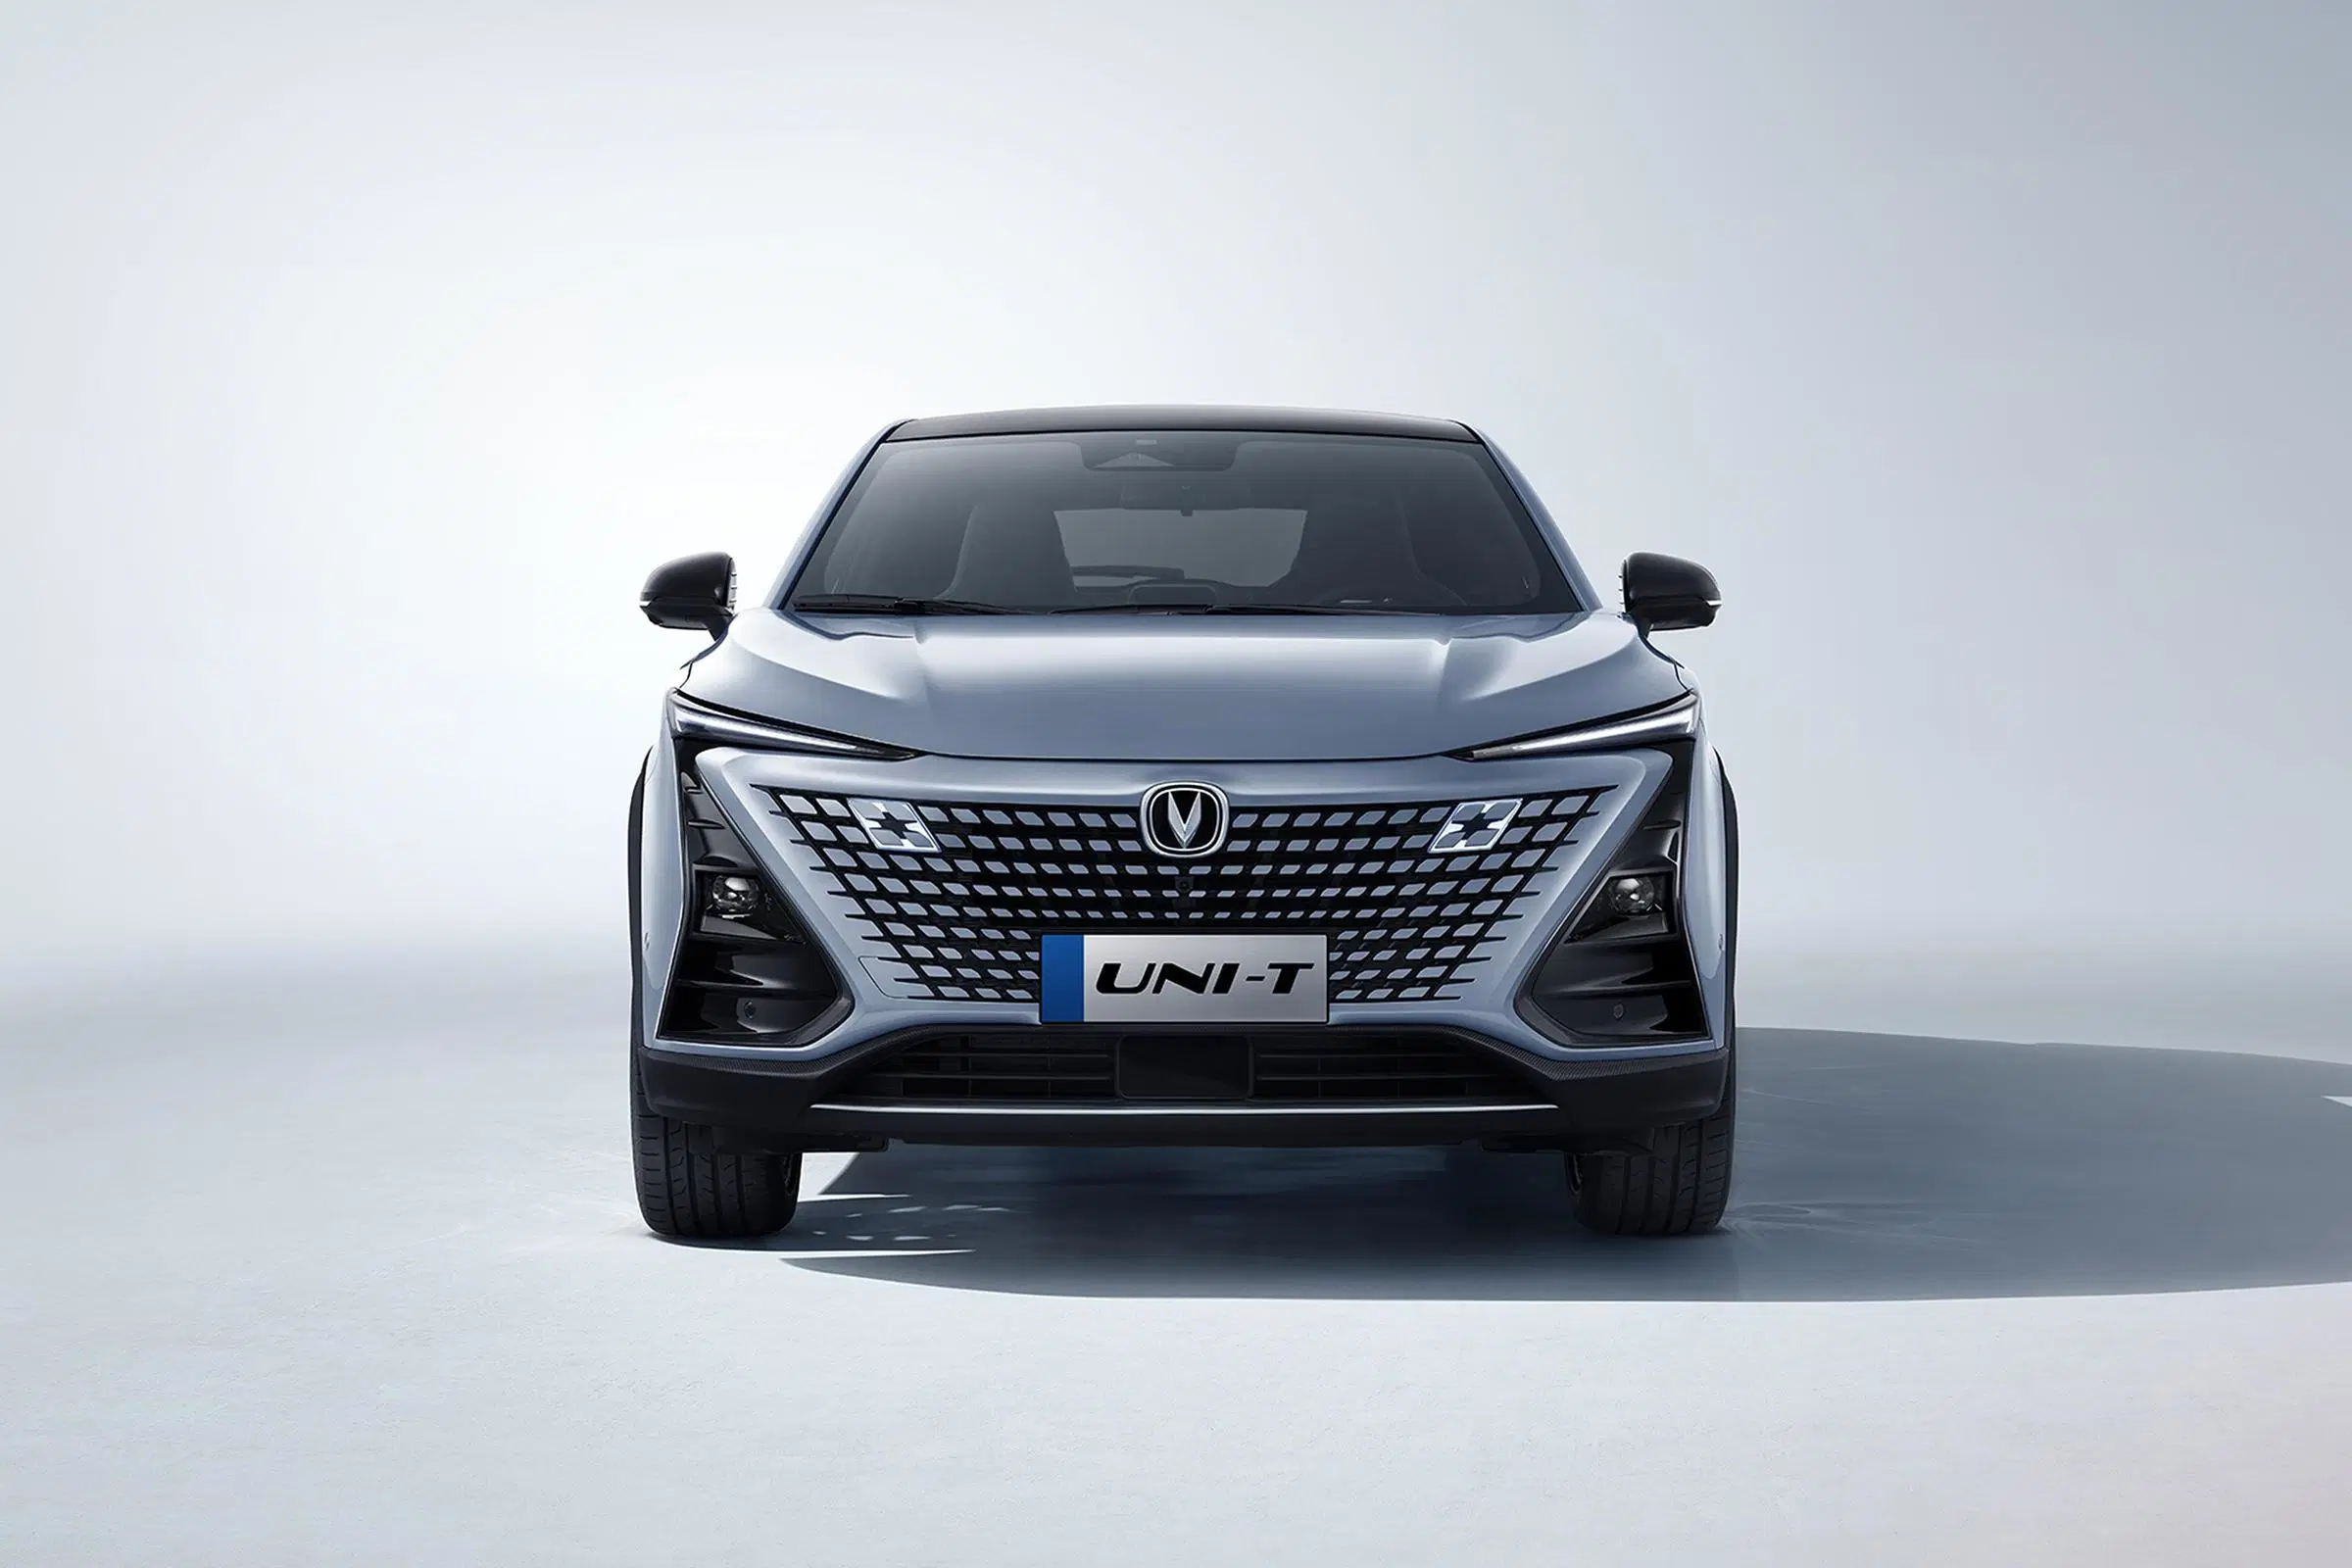 Лучшие Продажи дешевых подержанных легковых автомобилей 2021 2022 2023 газовым двигателем Changan Uni-T бензин бензин автомобильный авто для взрослых левой Uni-K Uni-V Uni-T КРОССОВЕРА гибридный автомобиль кроссовер Changan в наличии на складе